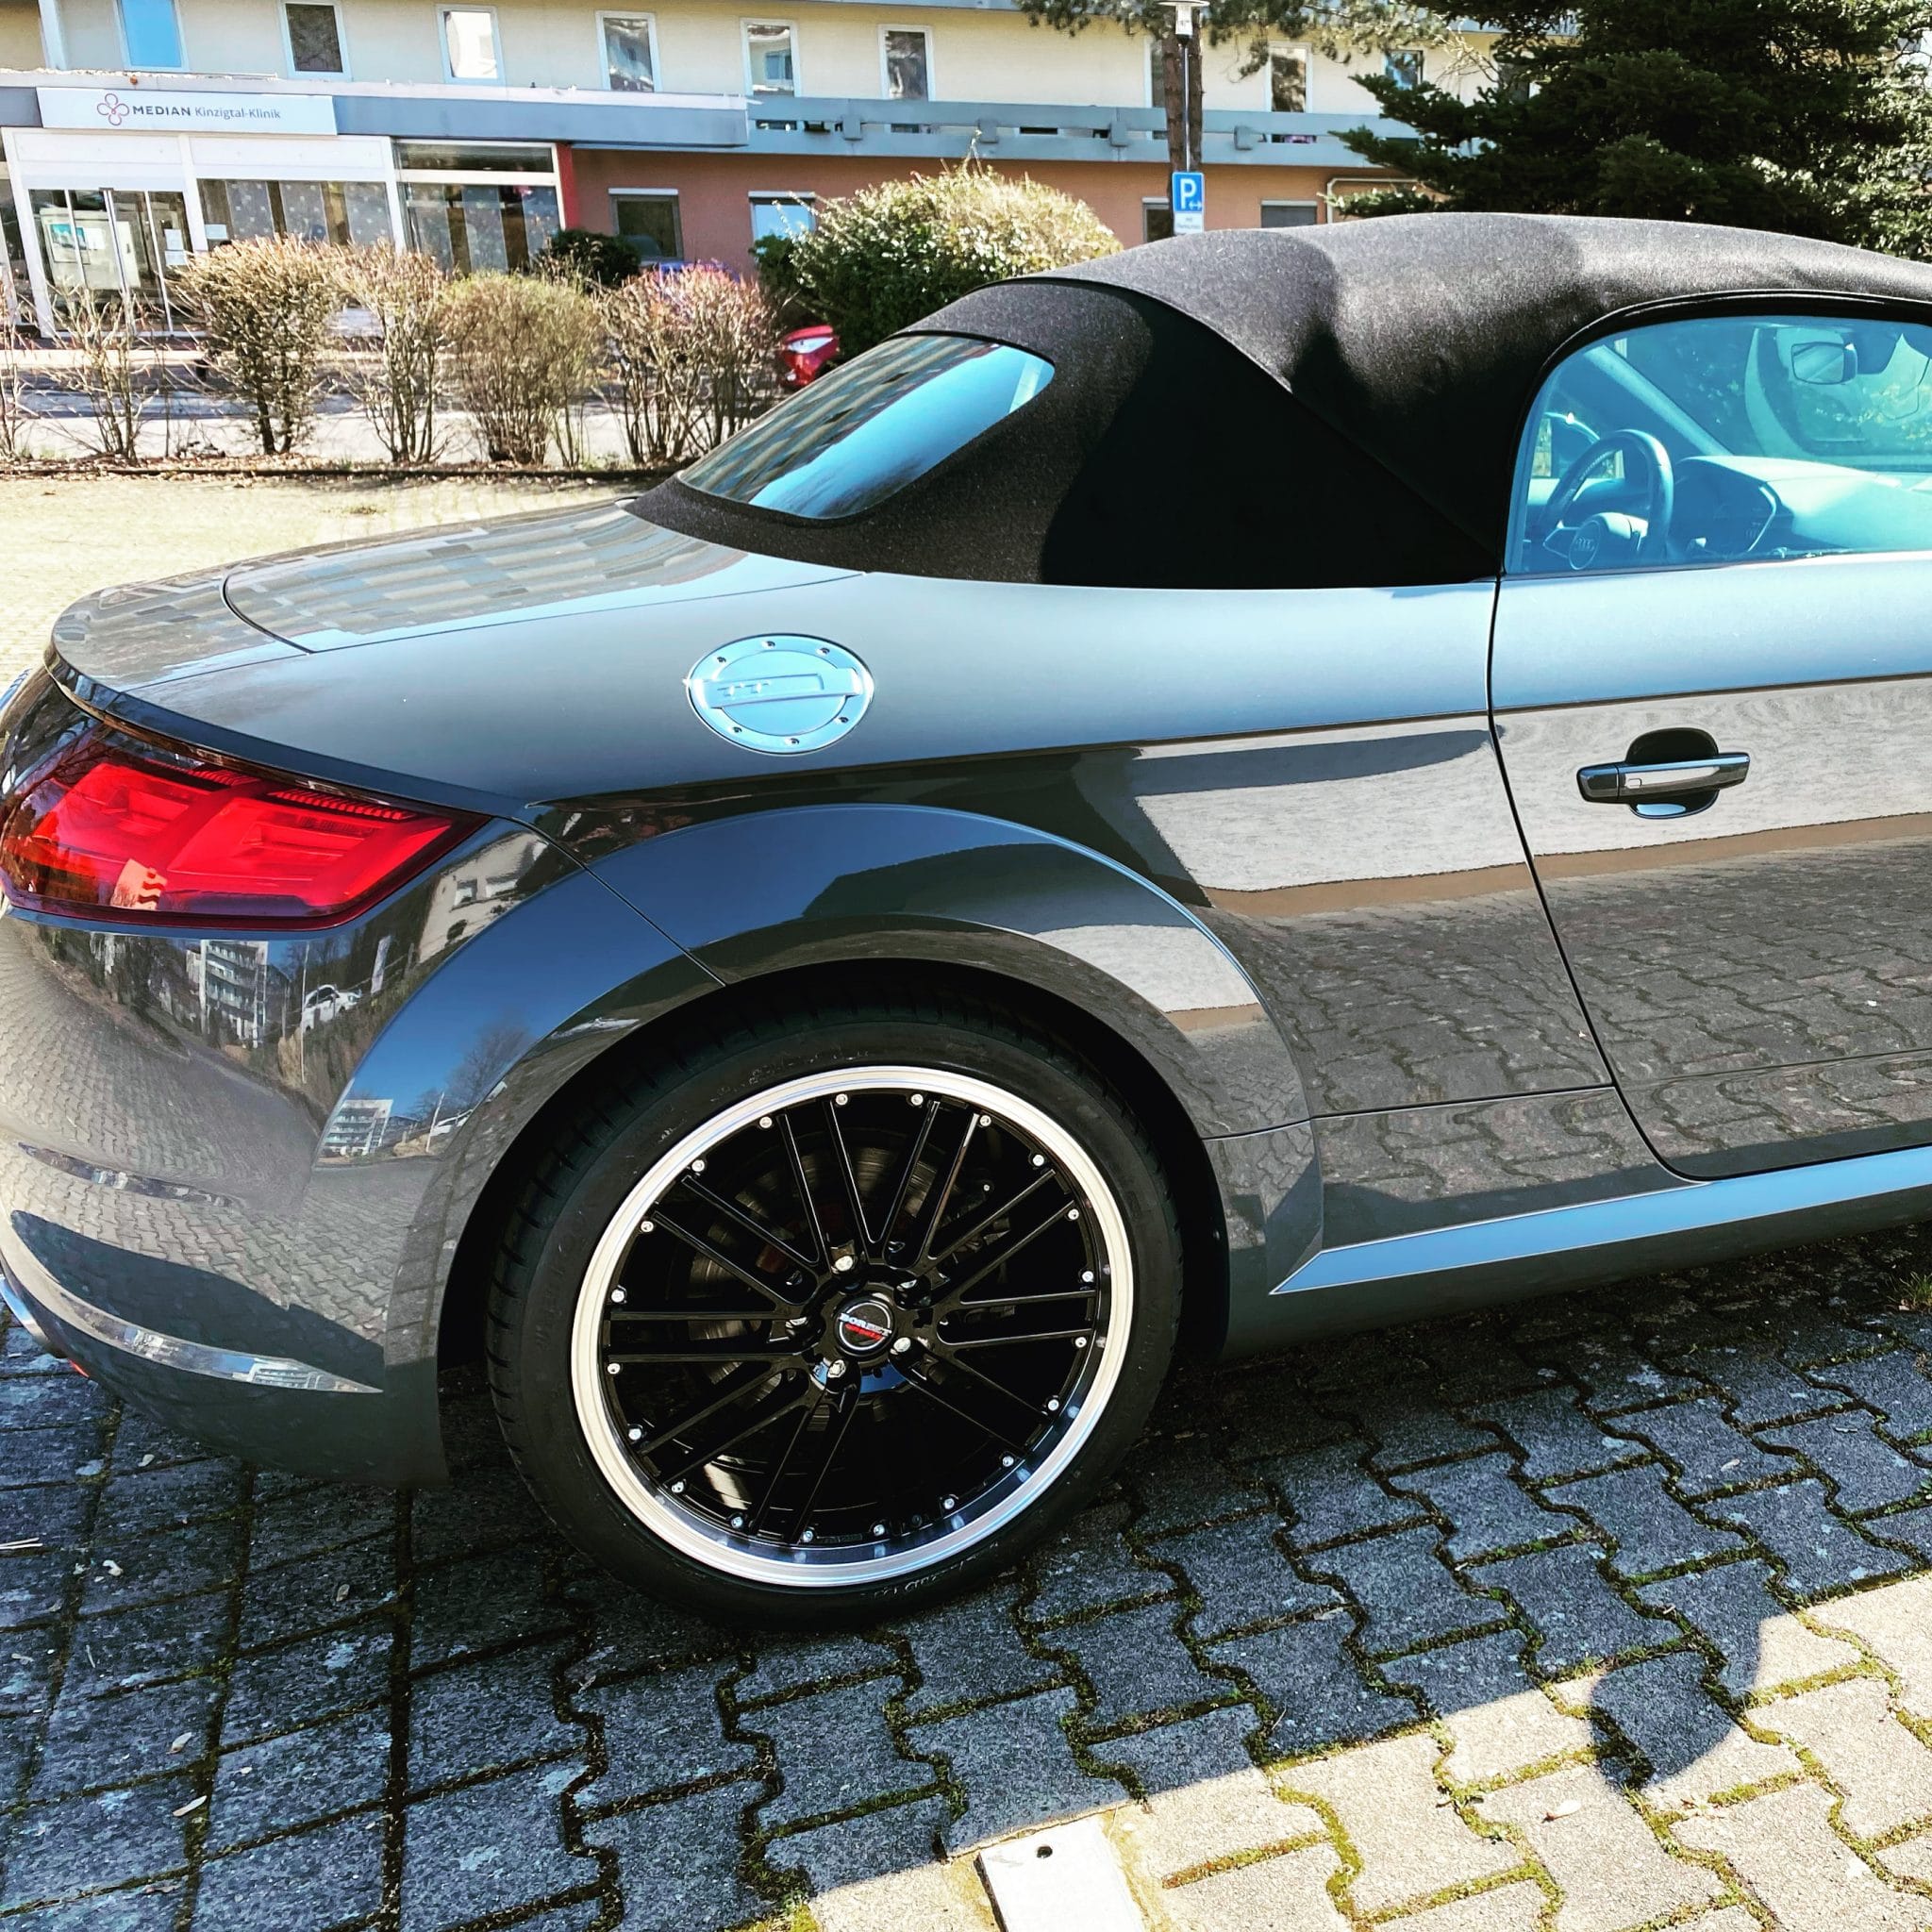 https://www.autodino.de/autonews/wp-content/uploads/2020/04/Audi-TT-Roadster-Felgen-Borbet-CW2-scaled.jpg